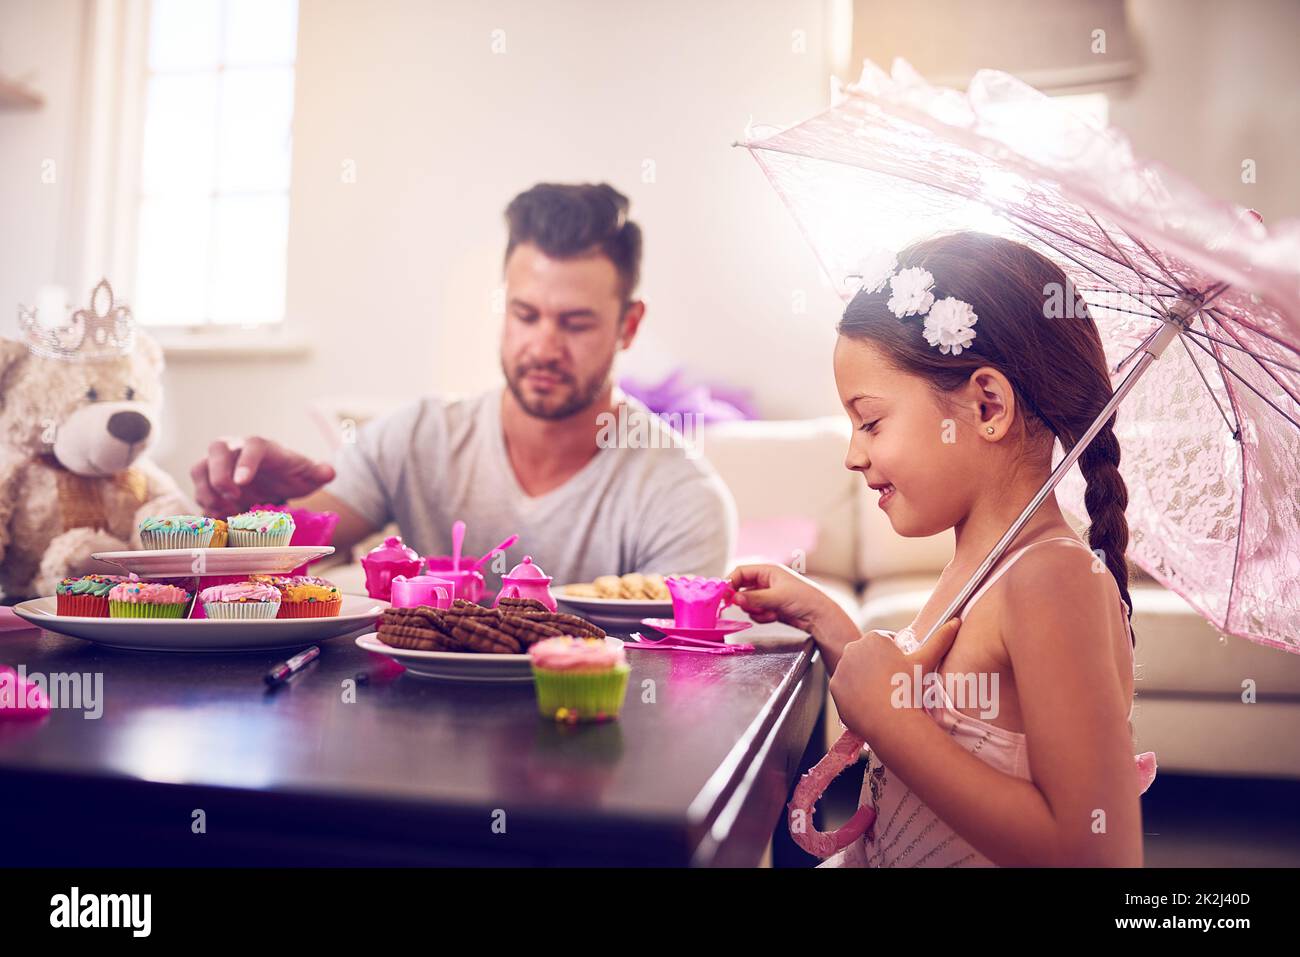 Chaque grand souvenir d'enfance inclut une fête de thé royal. Photo d'un père et de sa petite fille ayant une fête de thé ensemble à la maison. Banque D'Images